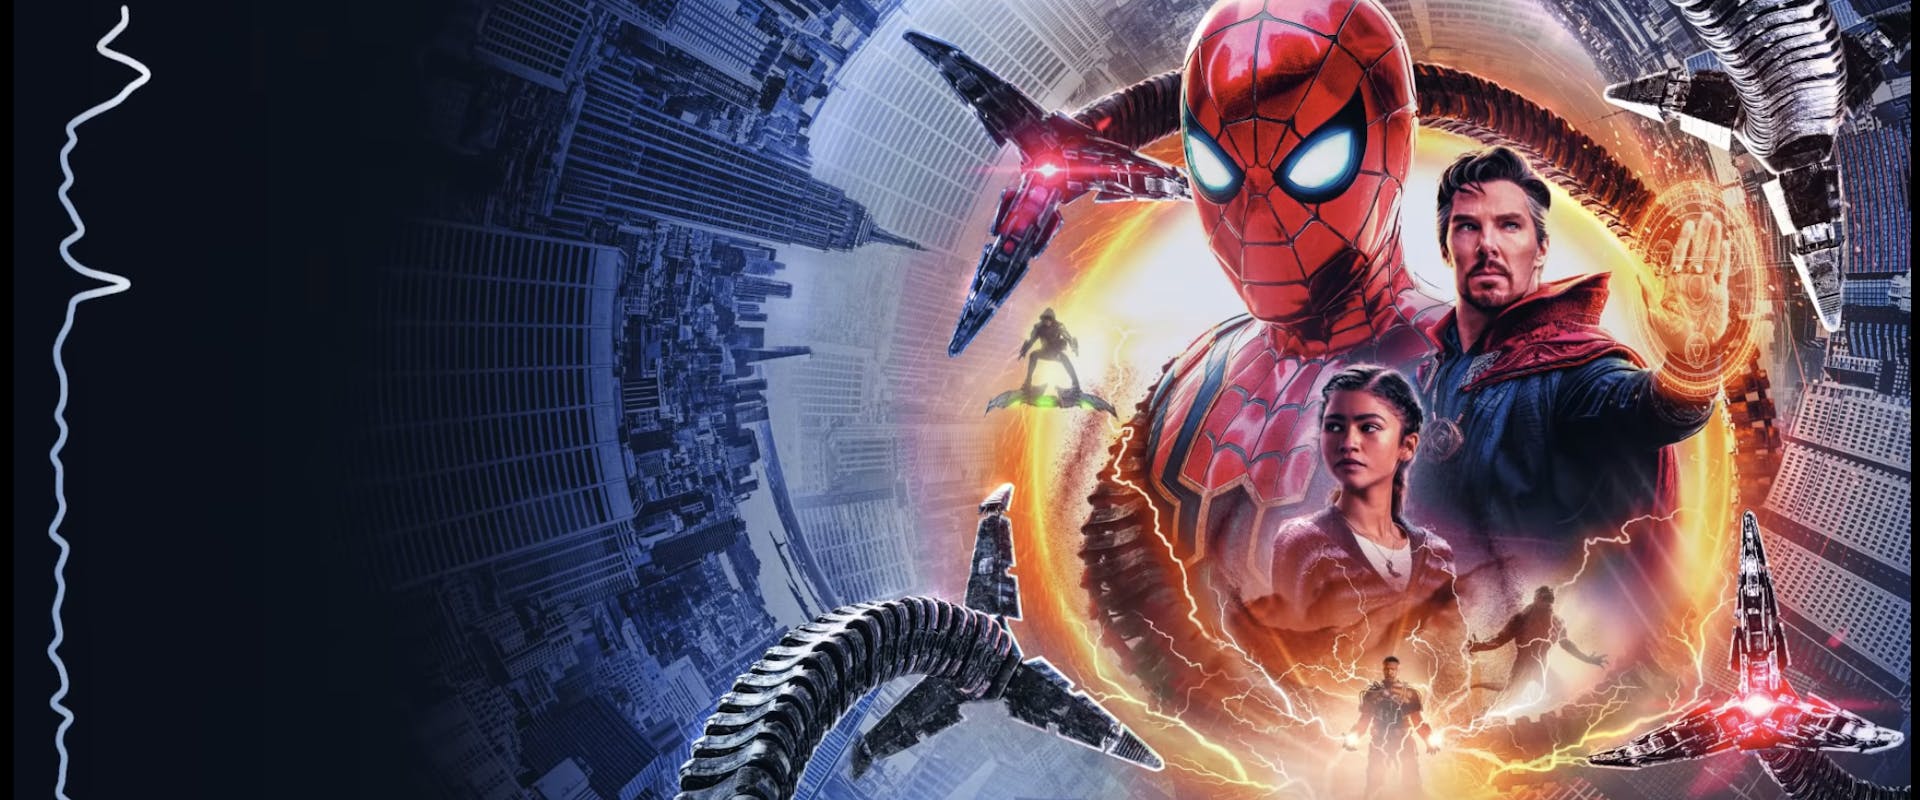 Spider-Man: No Way Home Closes With a De La Soul Classic